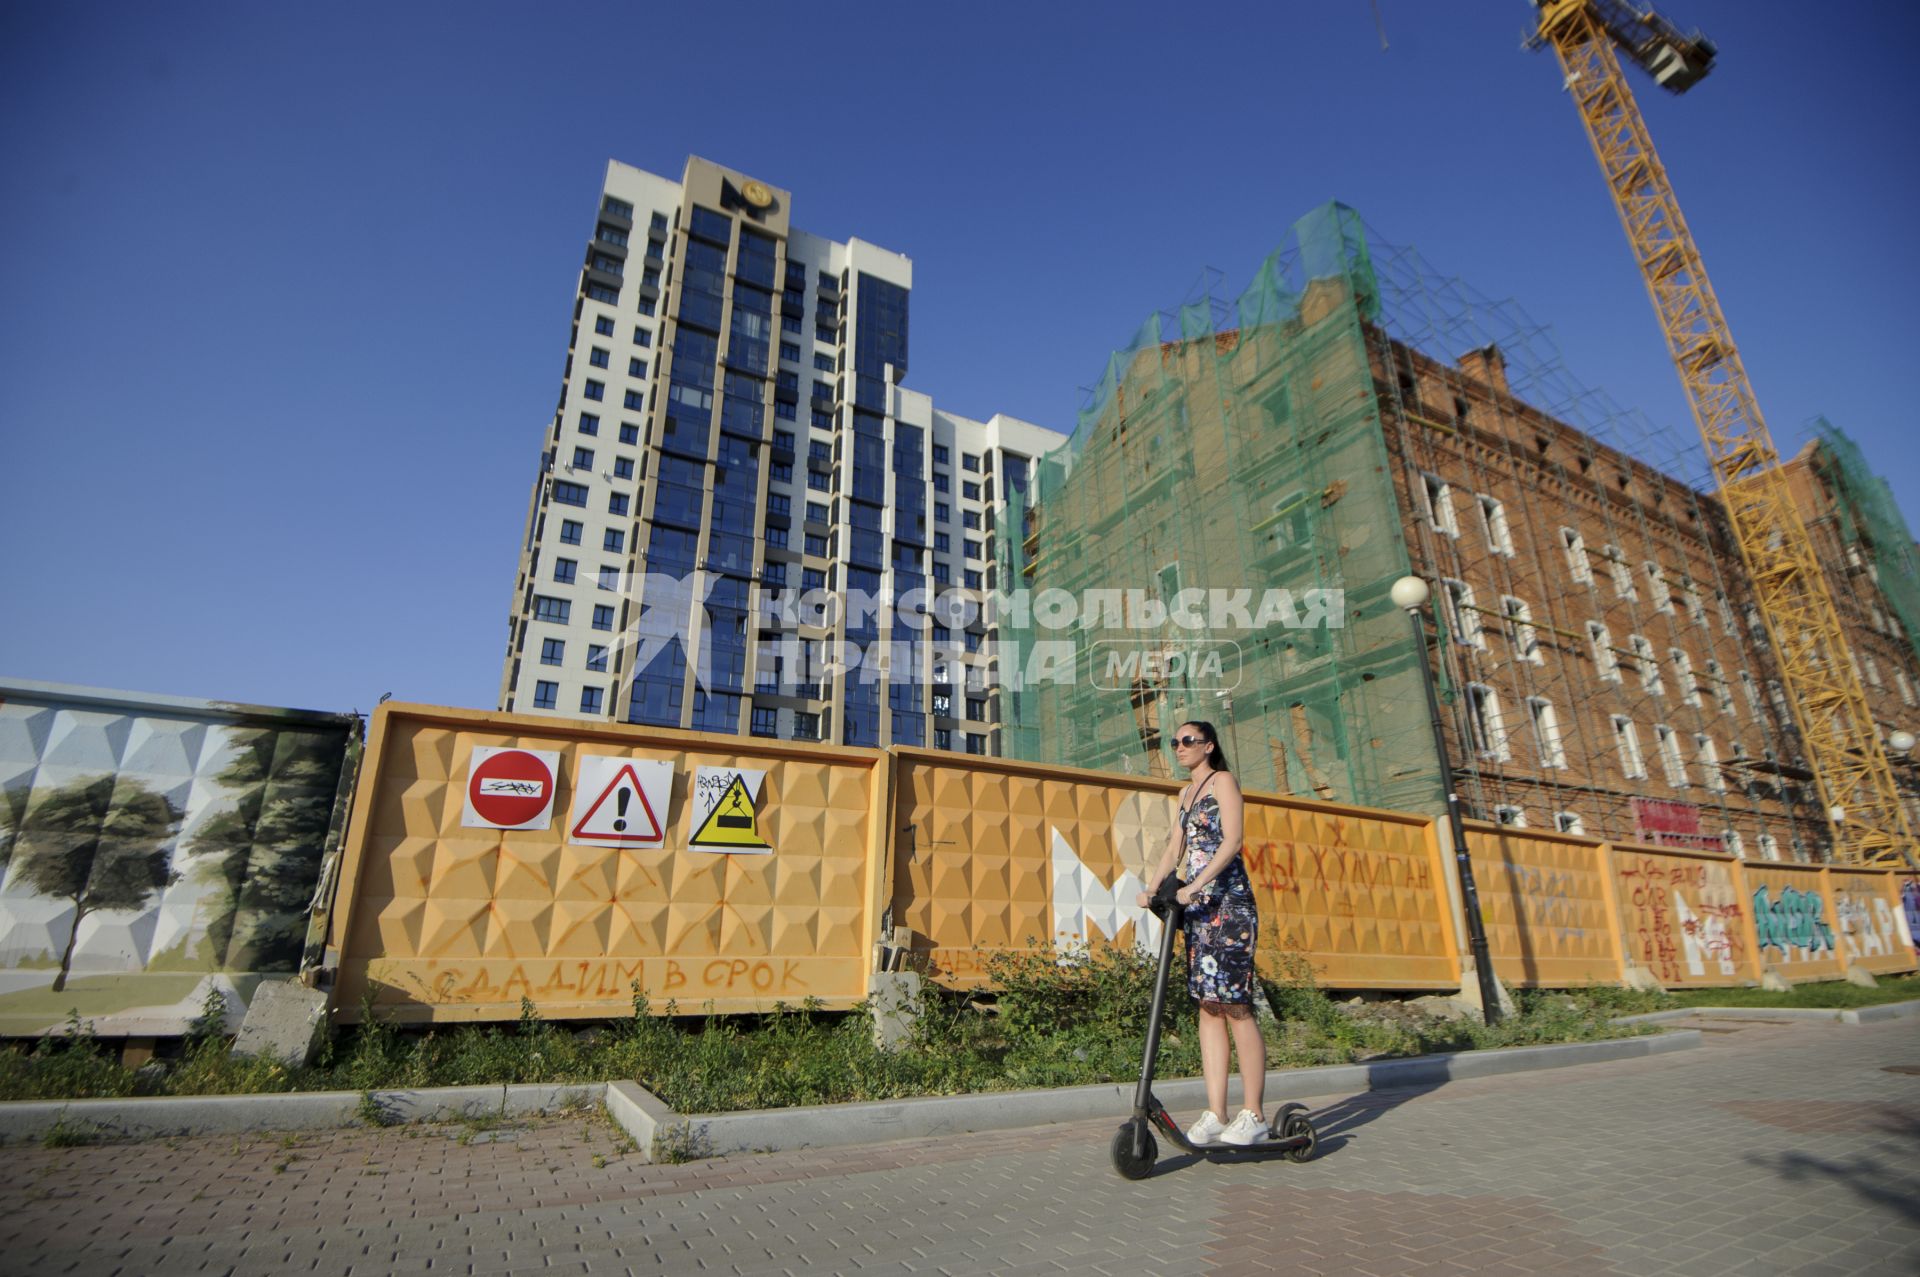 Екатеринбург. Девушка едет на самокате во время летней жары